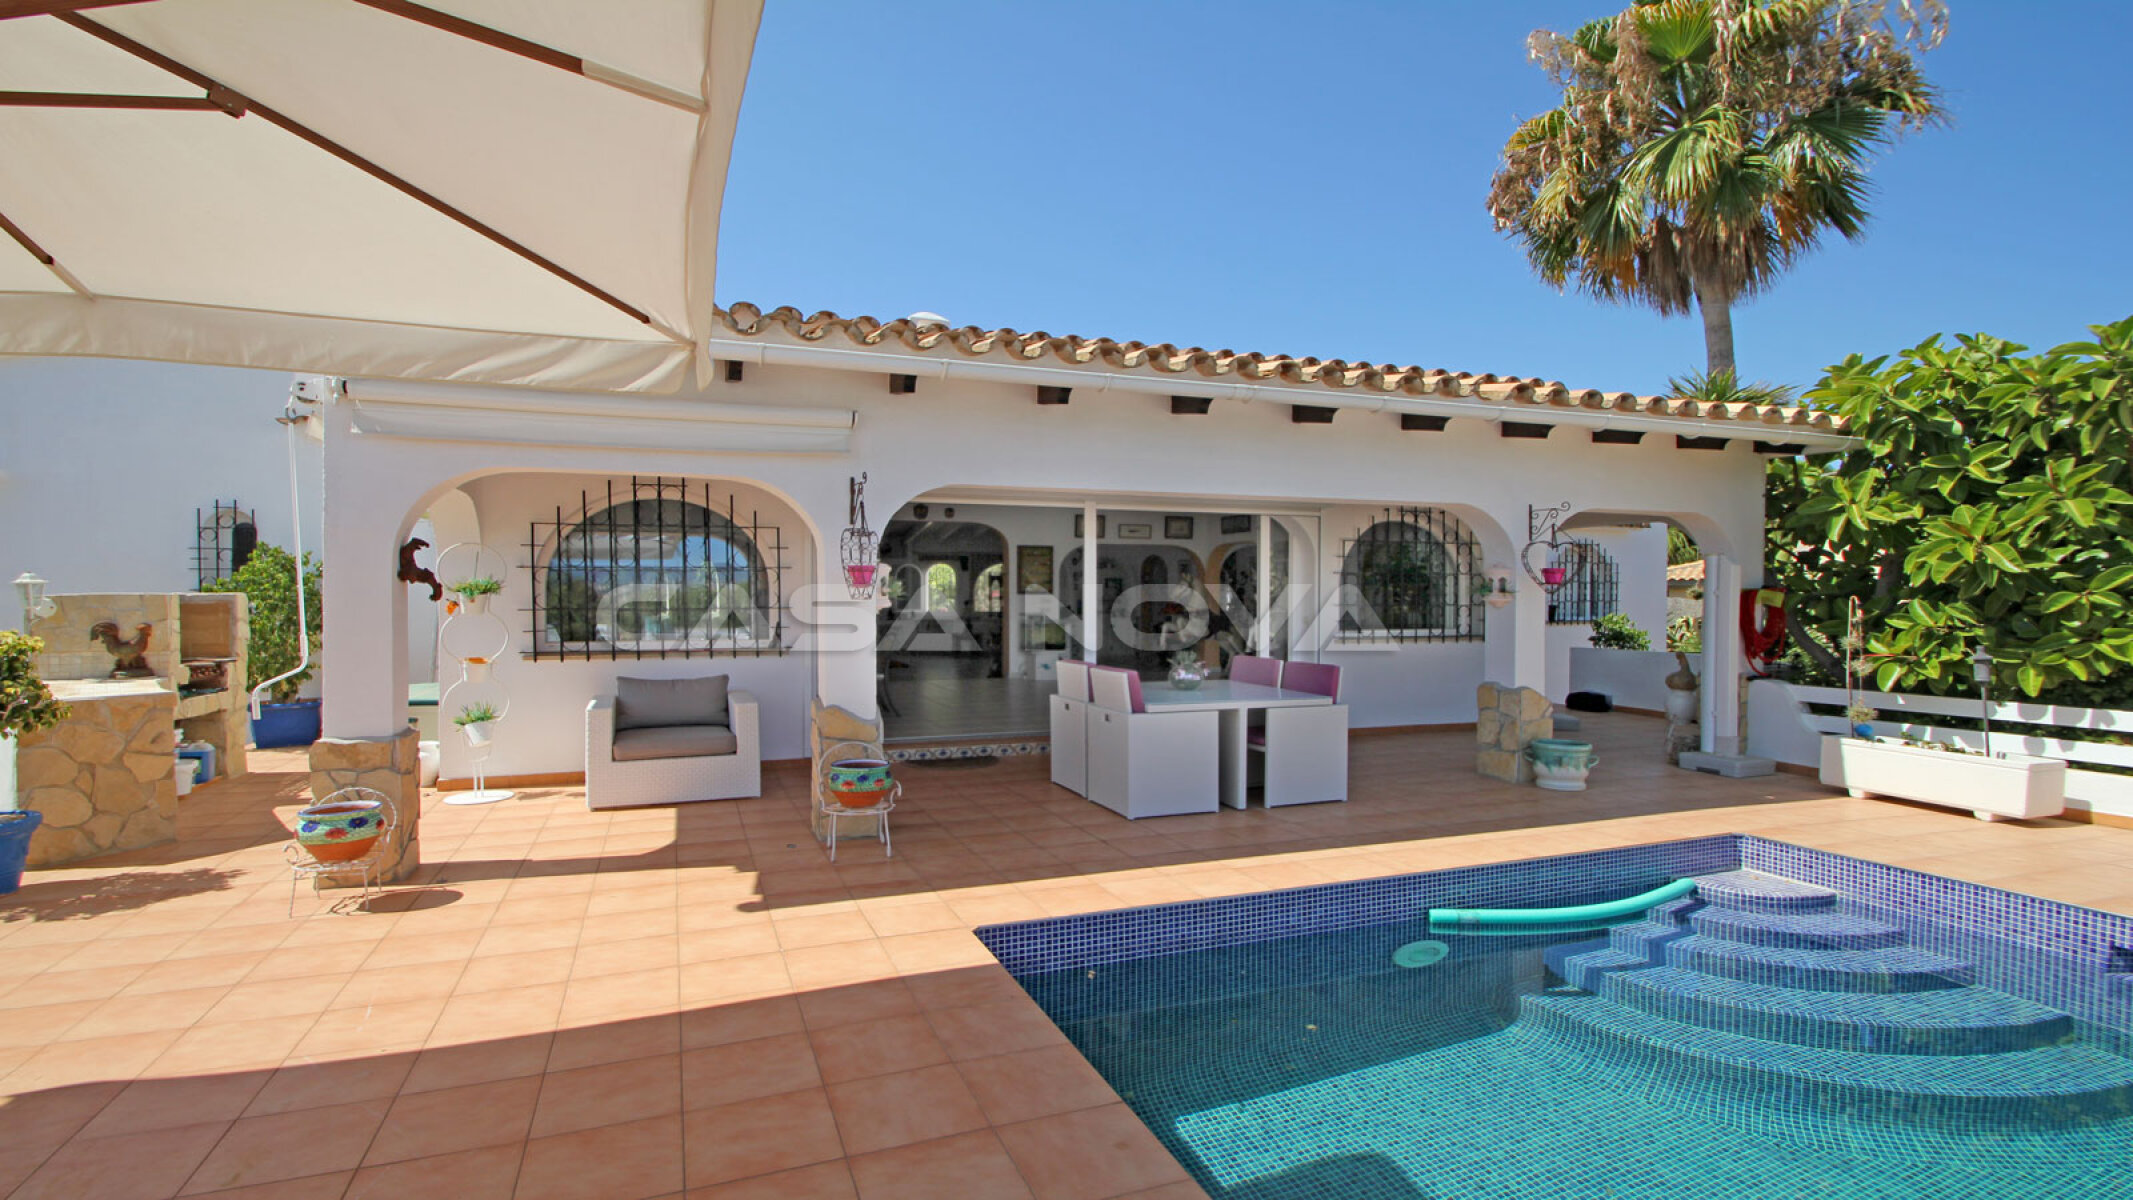 Mediterrane Ibiza-Stil Villa in bevorzugter Wohnlage